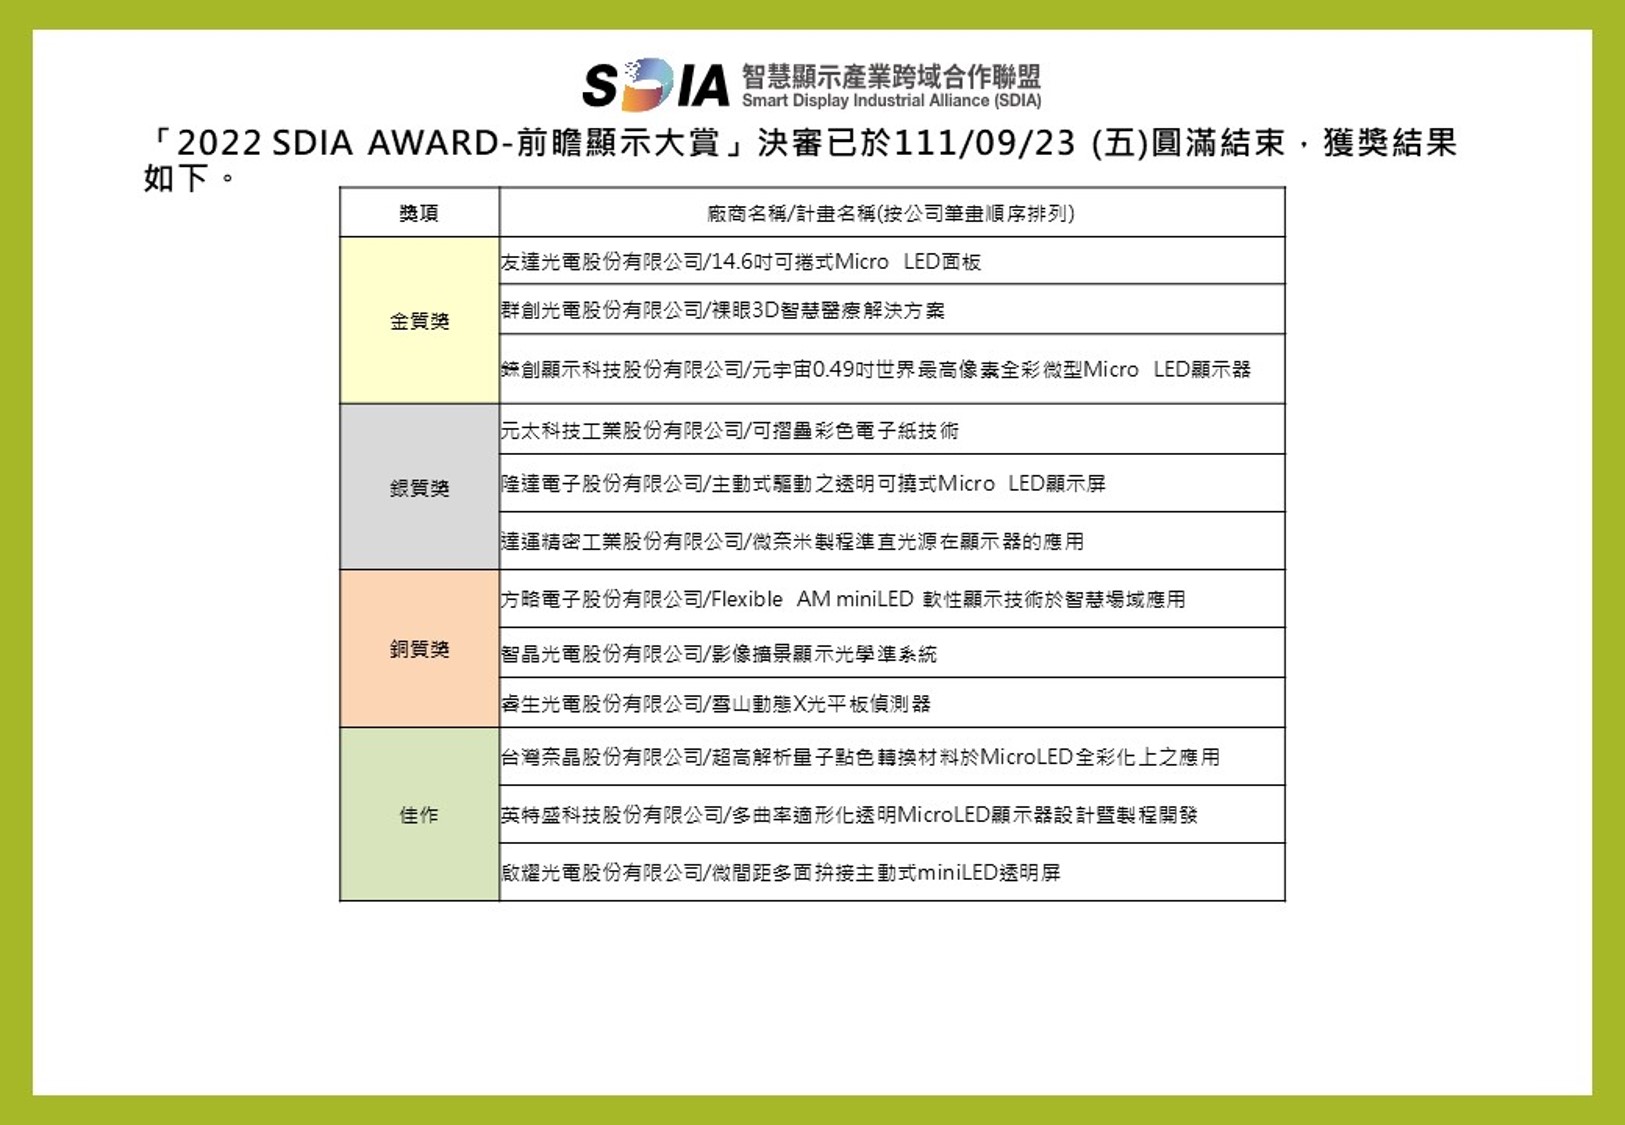 「2022 SDIA AWARD-前瞻顯示大賞」審查結果公告